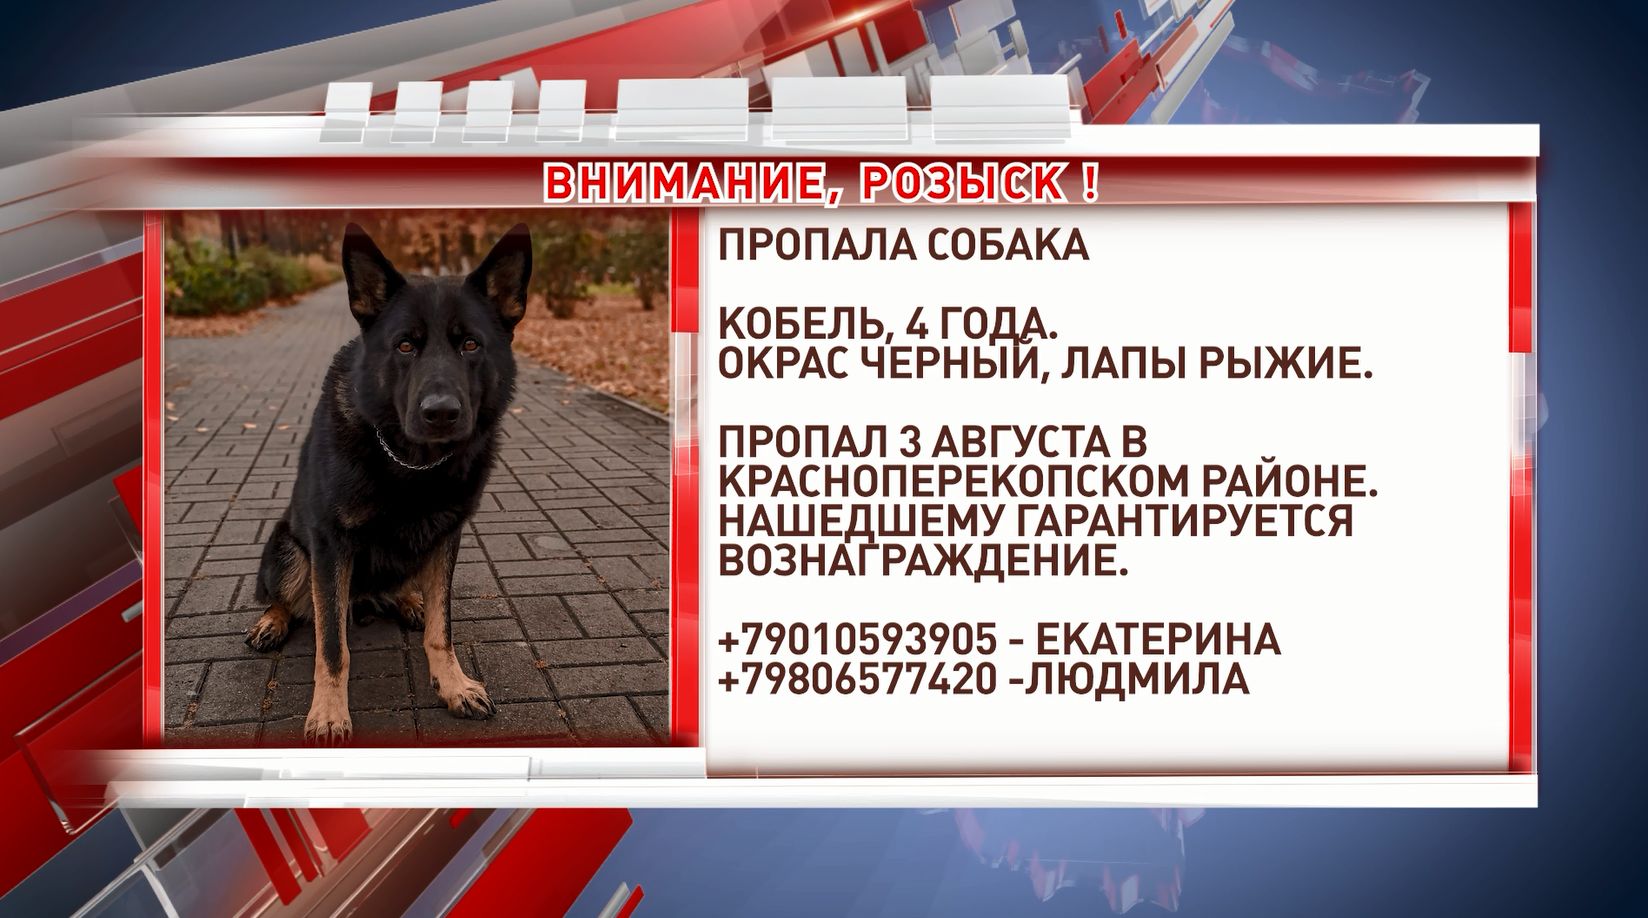 3 августа в Красноперекопском районе потерялась собака.